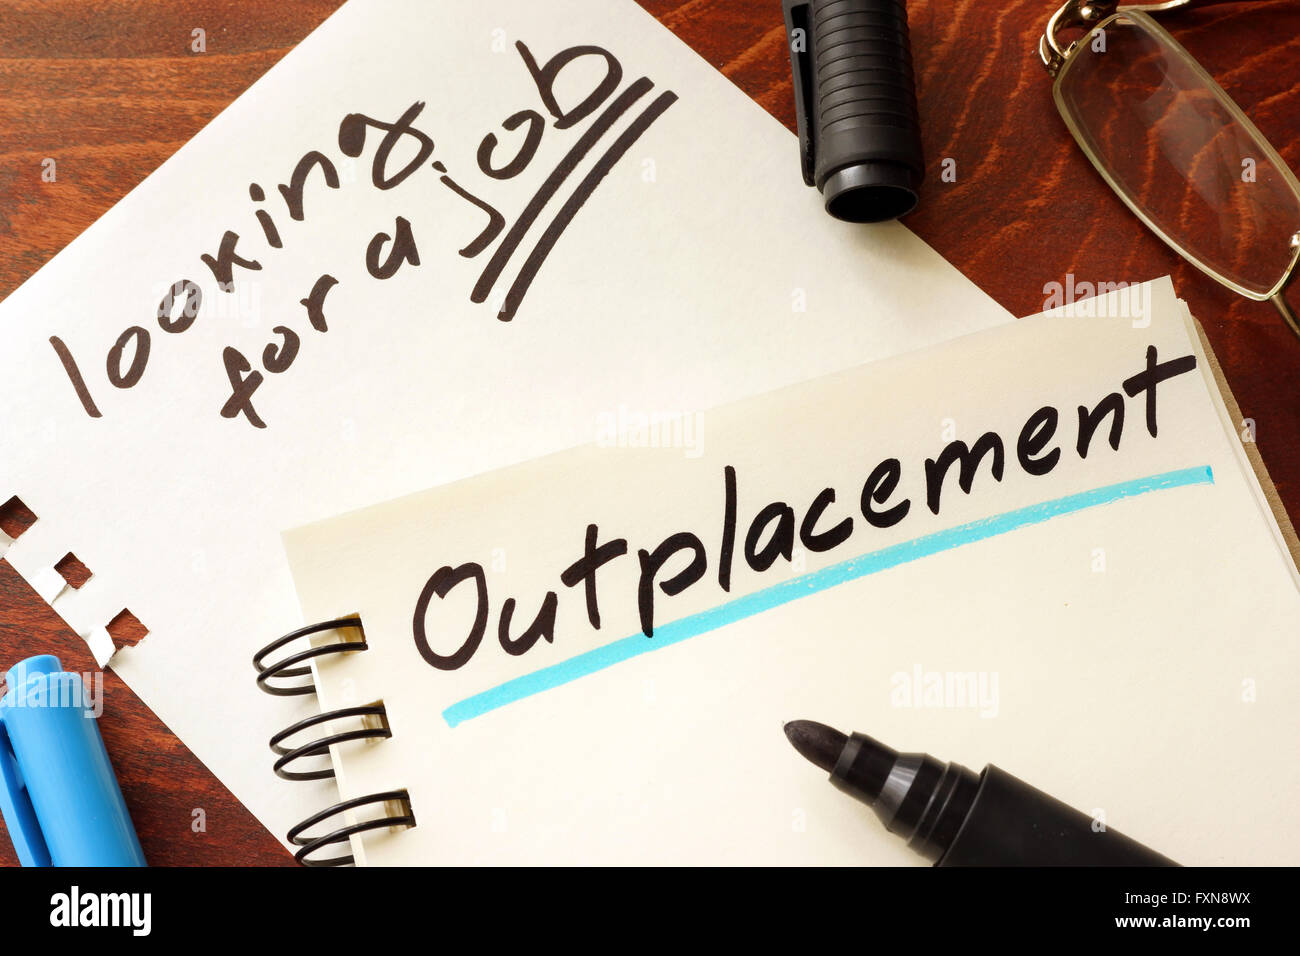 Outplacement, geschrieben auf einem Notizblock. Auf der Suche nach einem Job-Konzept. Stockfoto